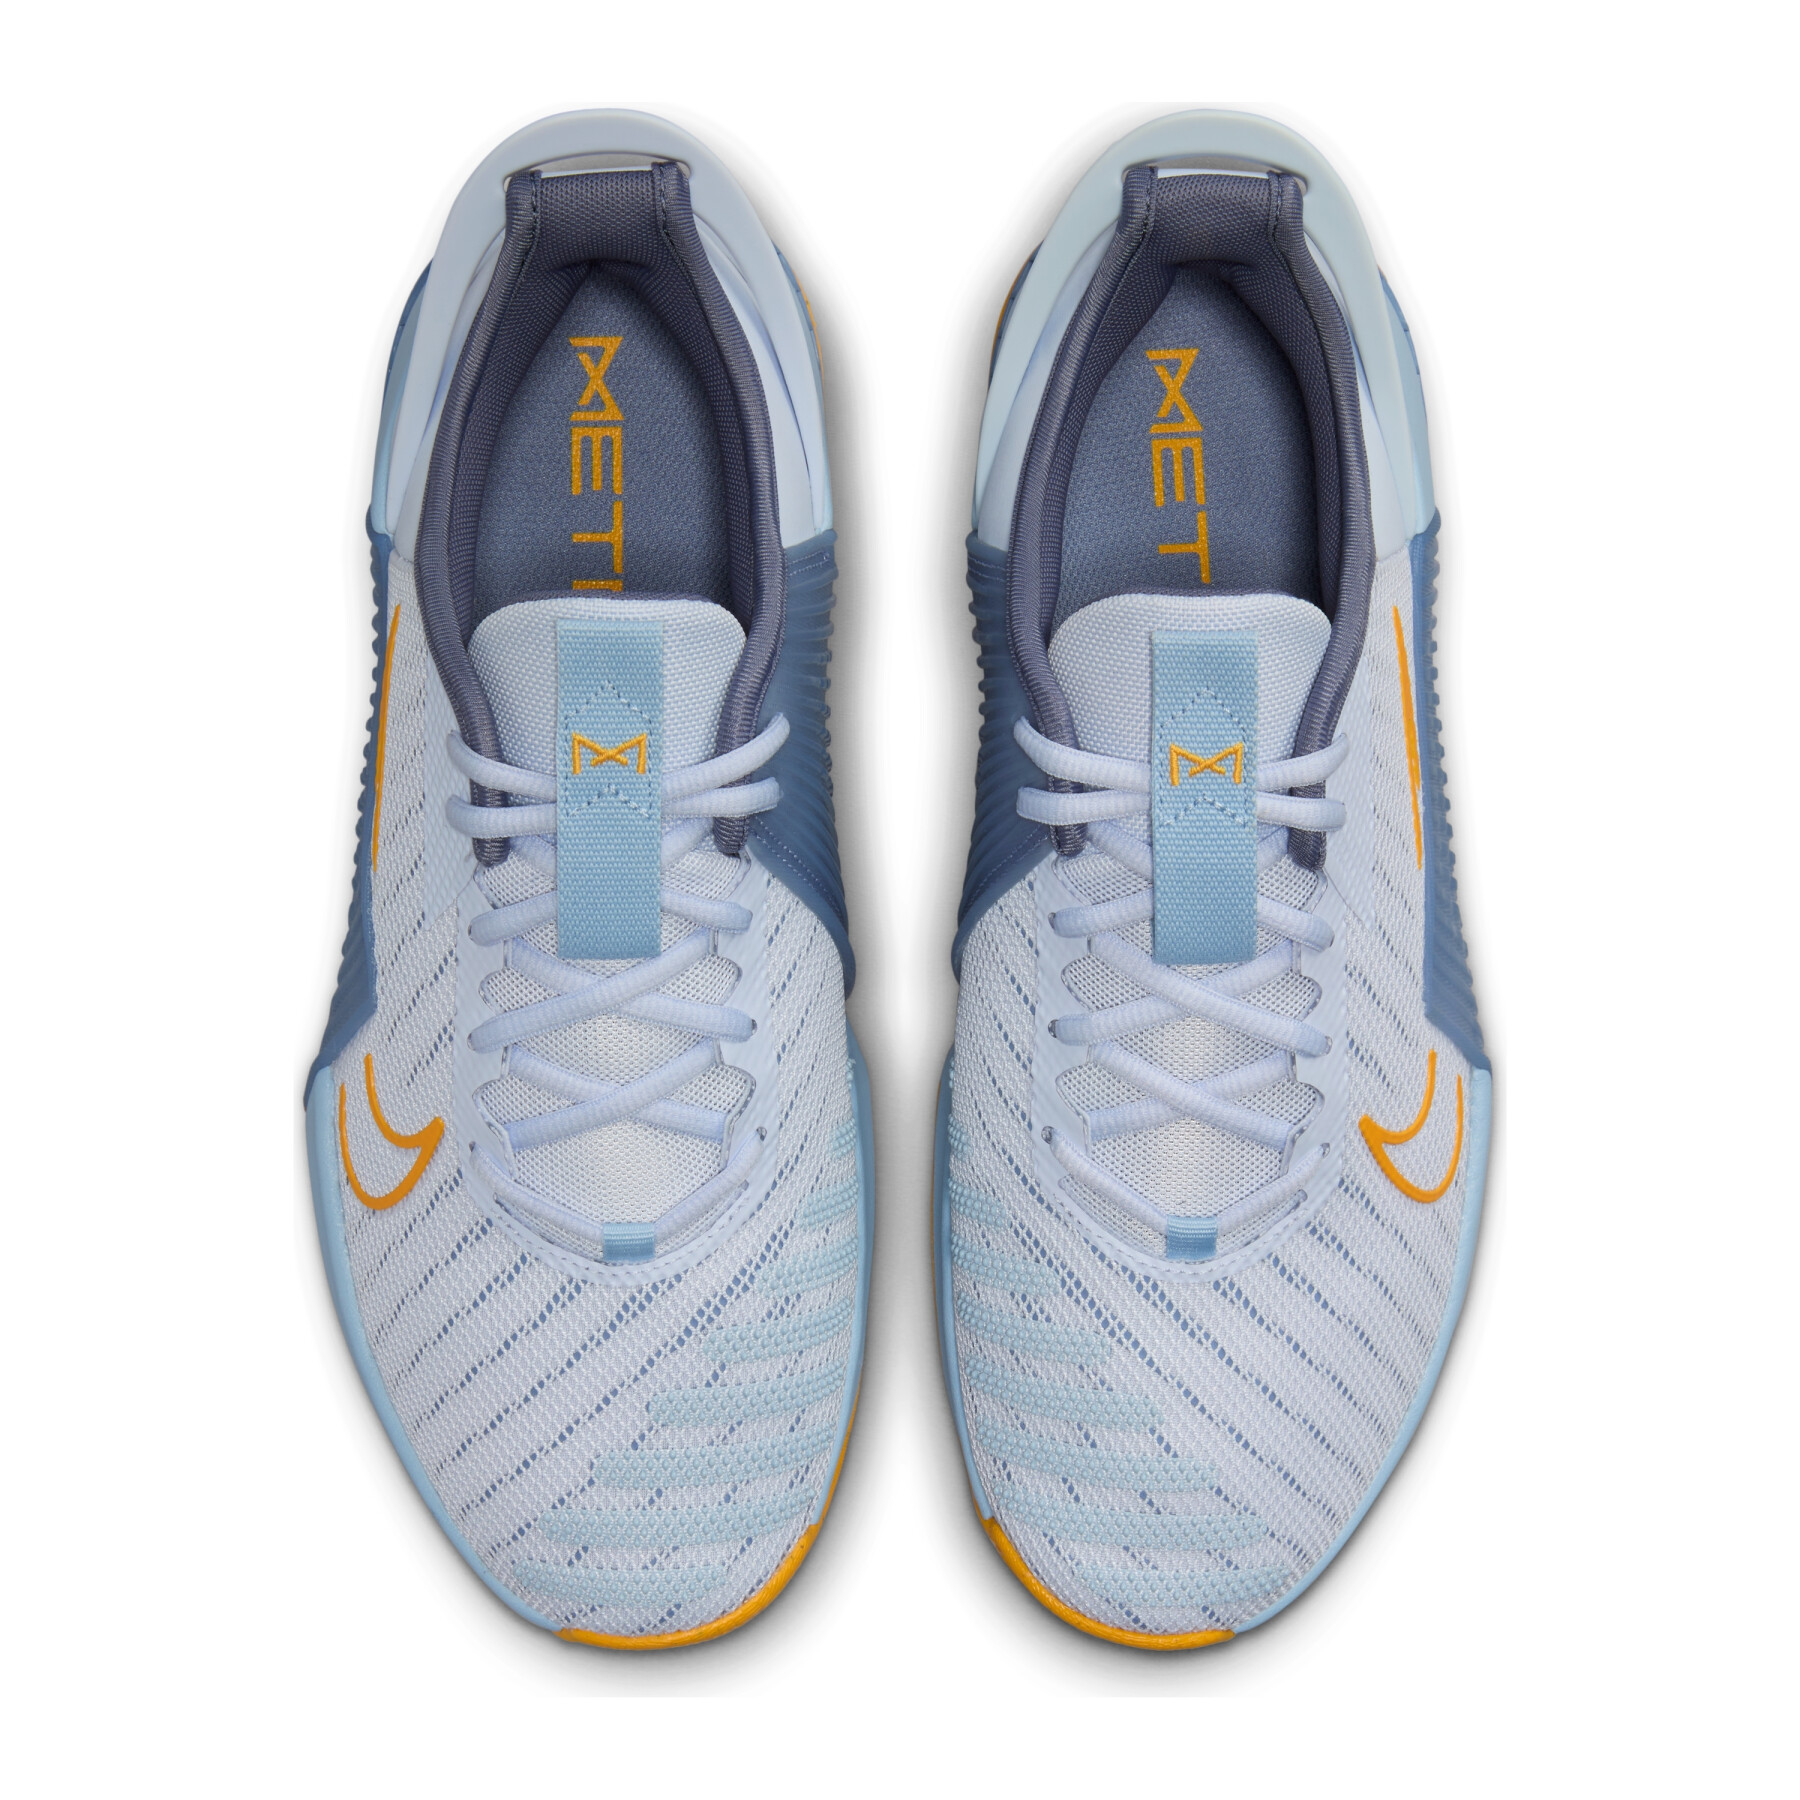 Zapatillas de cross training Nike Metcon 9 FlyEase